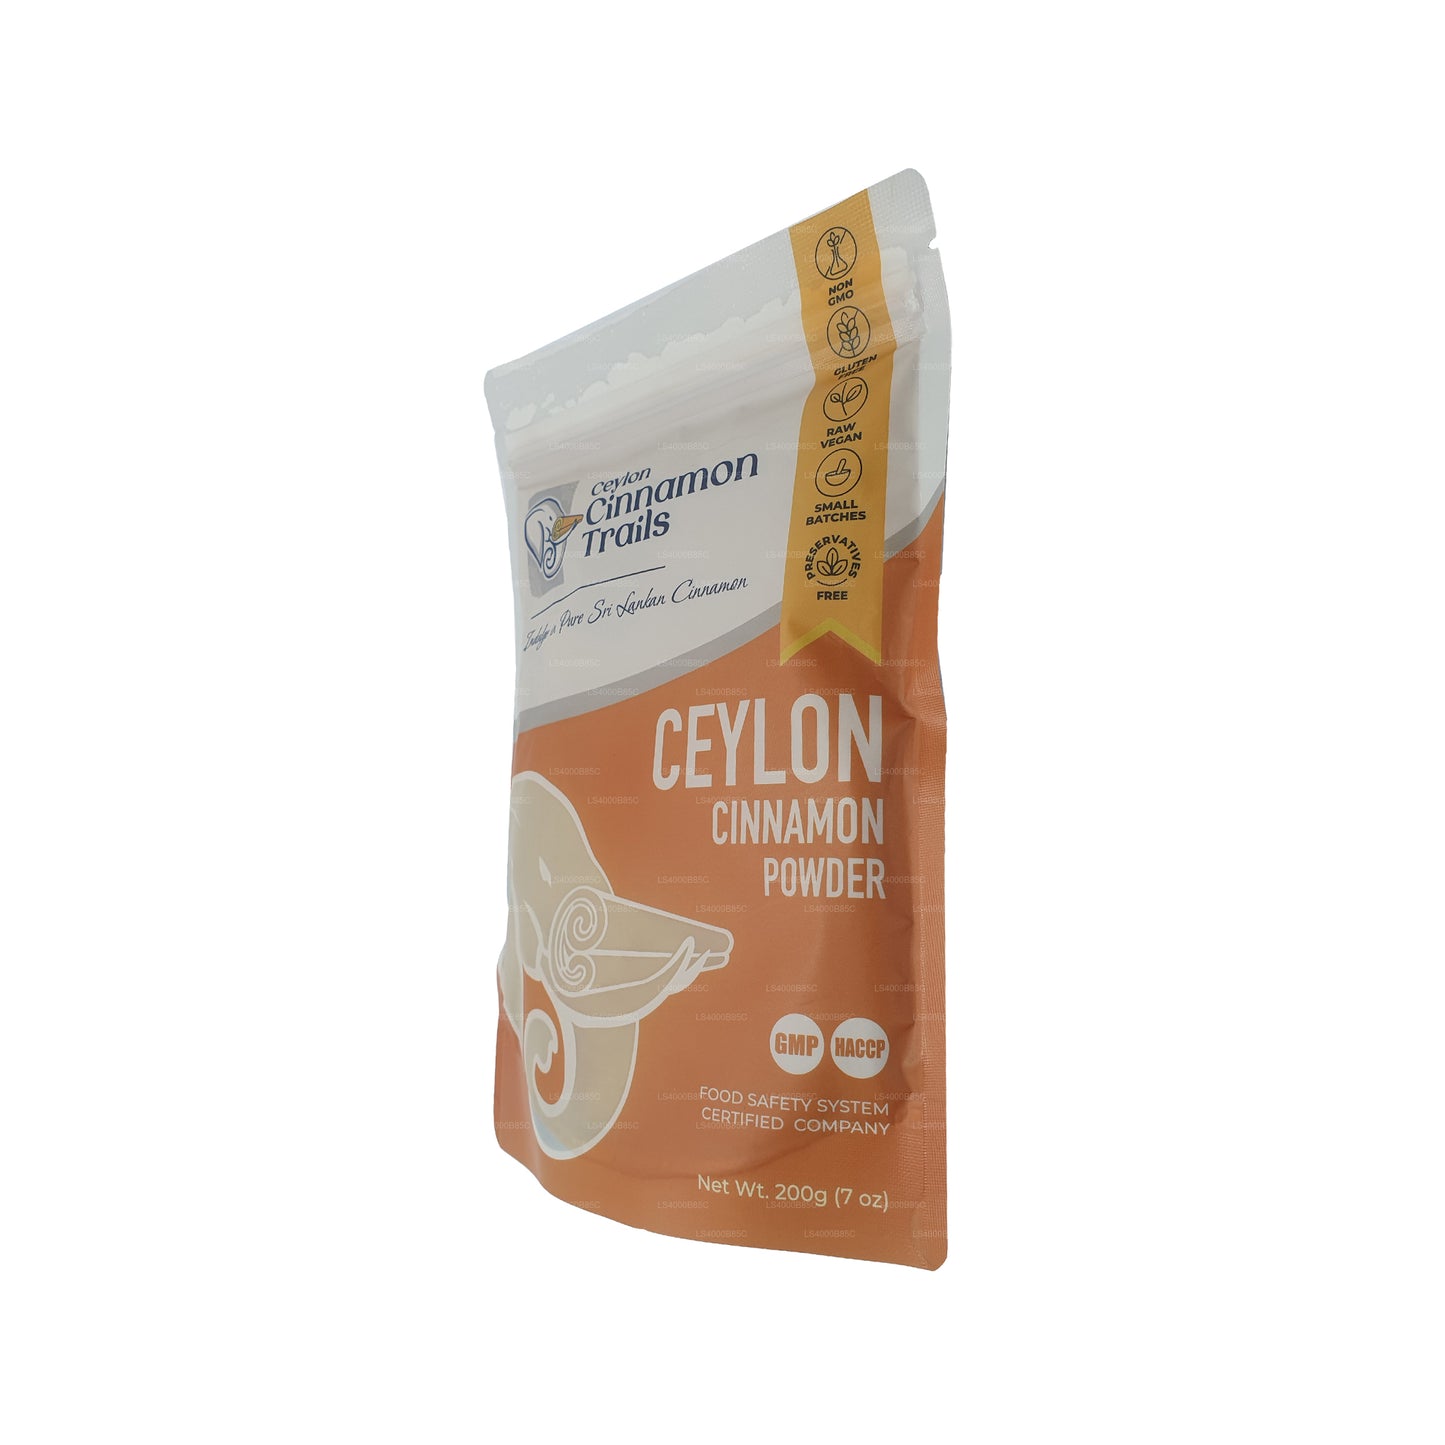 Ceylon Cinnamon Trails Zimtpulver (200 g)